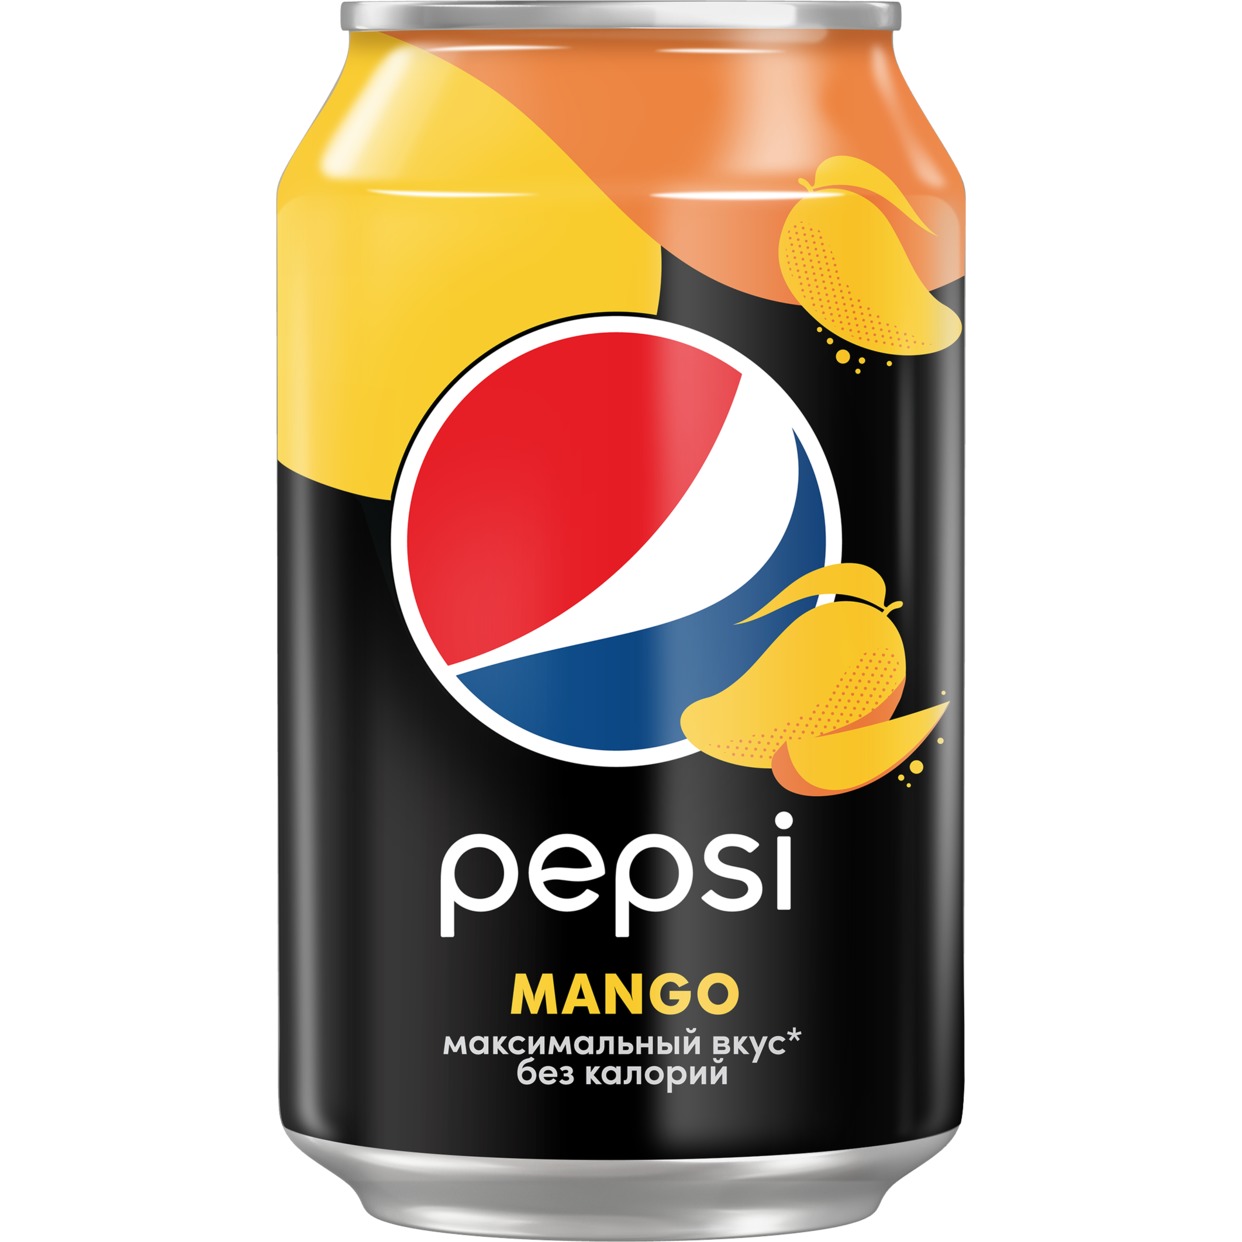 Напиток безалкогольный сильногазированный низкокалорийный "Pepsi Mango" Вкус Манго 0.33л БАН 12Х по акции в Пятерочке